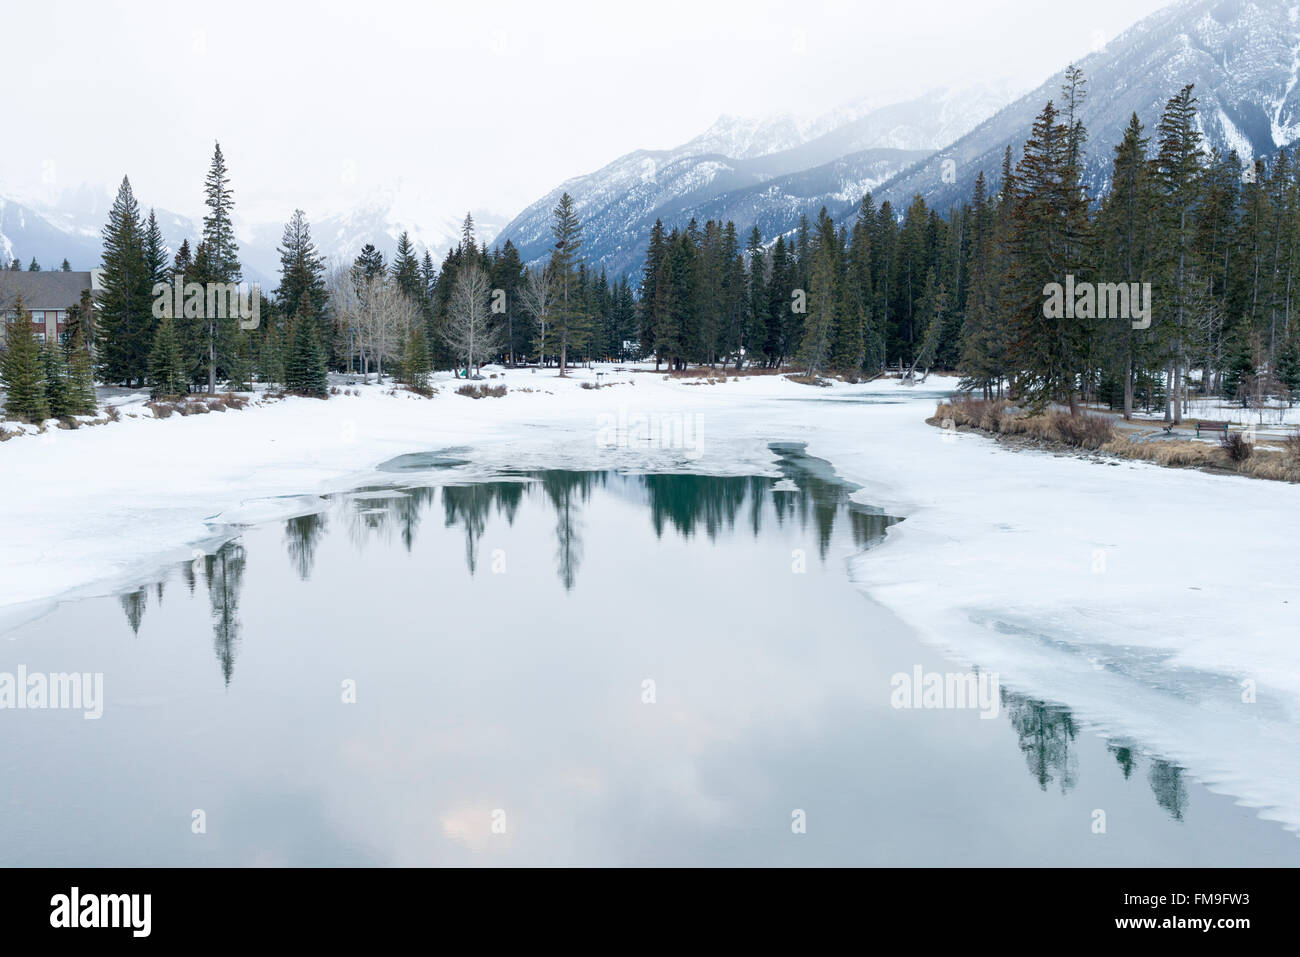 Un paysage gelé dans ciel couvert à la rivière Bow dans les Rocheuses au Canada Banff en hiver avec de la neige Banque D'Images